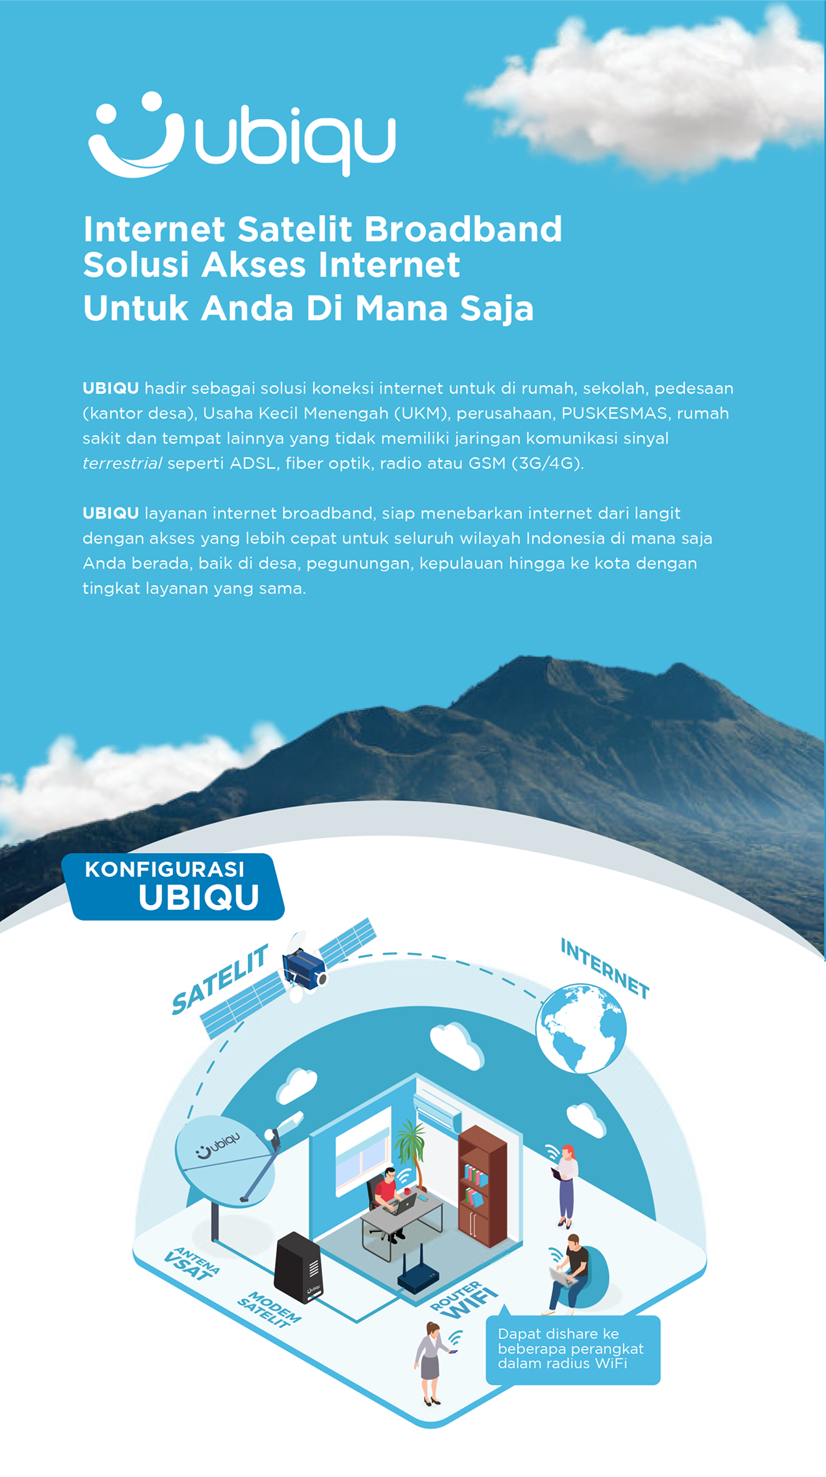 Ubiqu Internet Satelit Broadband Solusi Akses Internet Untuk Anda Di Mana Saja UBIQU hadir sebagai solusi koneksi internet untuk di rumah, sekolah, pedesaan (kantor desa), Usaha Kecil Menengah (UKM), perusahaan, PUSKESMAS, rumah sakit dan tempat lainnya yang tidak memiliki jaringan komunikasi sinyal terrestrial seperti ADSL, fiber optik, radio atau GSM (3G/4G). UBIQU layanan internet broadband, siap menebarkan internet dari langit dengan akses yang lebih cepat untuk seluruh wilayah Indonesia di mana saja Anda berada, baik di desa, pegunungan, kepulauan hingga ke kota dengan tingkat layanan yang sama. KONFIGURASI UBIQU SATELIT INTERNET ubiqu ROUTER WIF Dapat dishare ke beberapa perangkat dalam radius WiFi